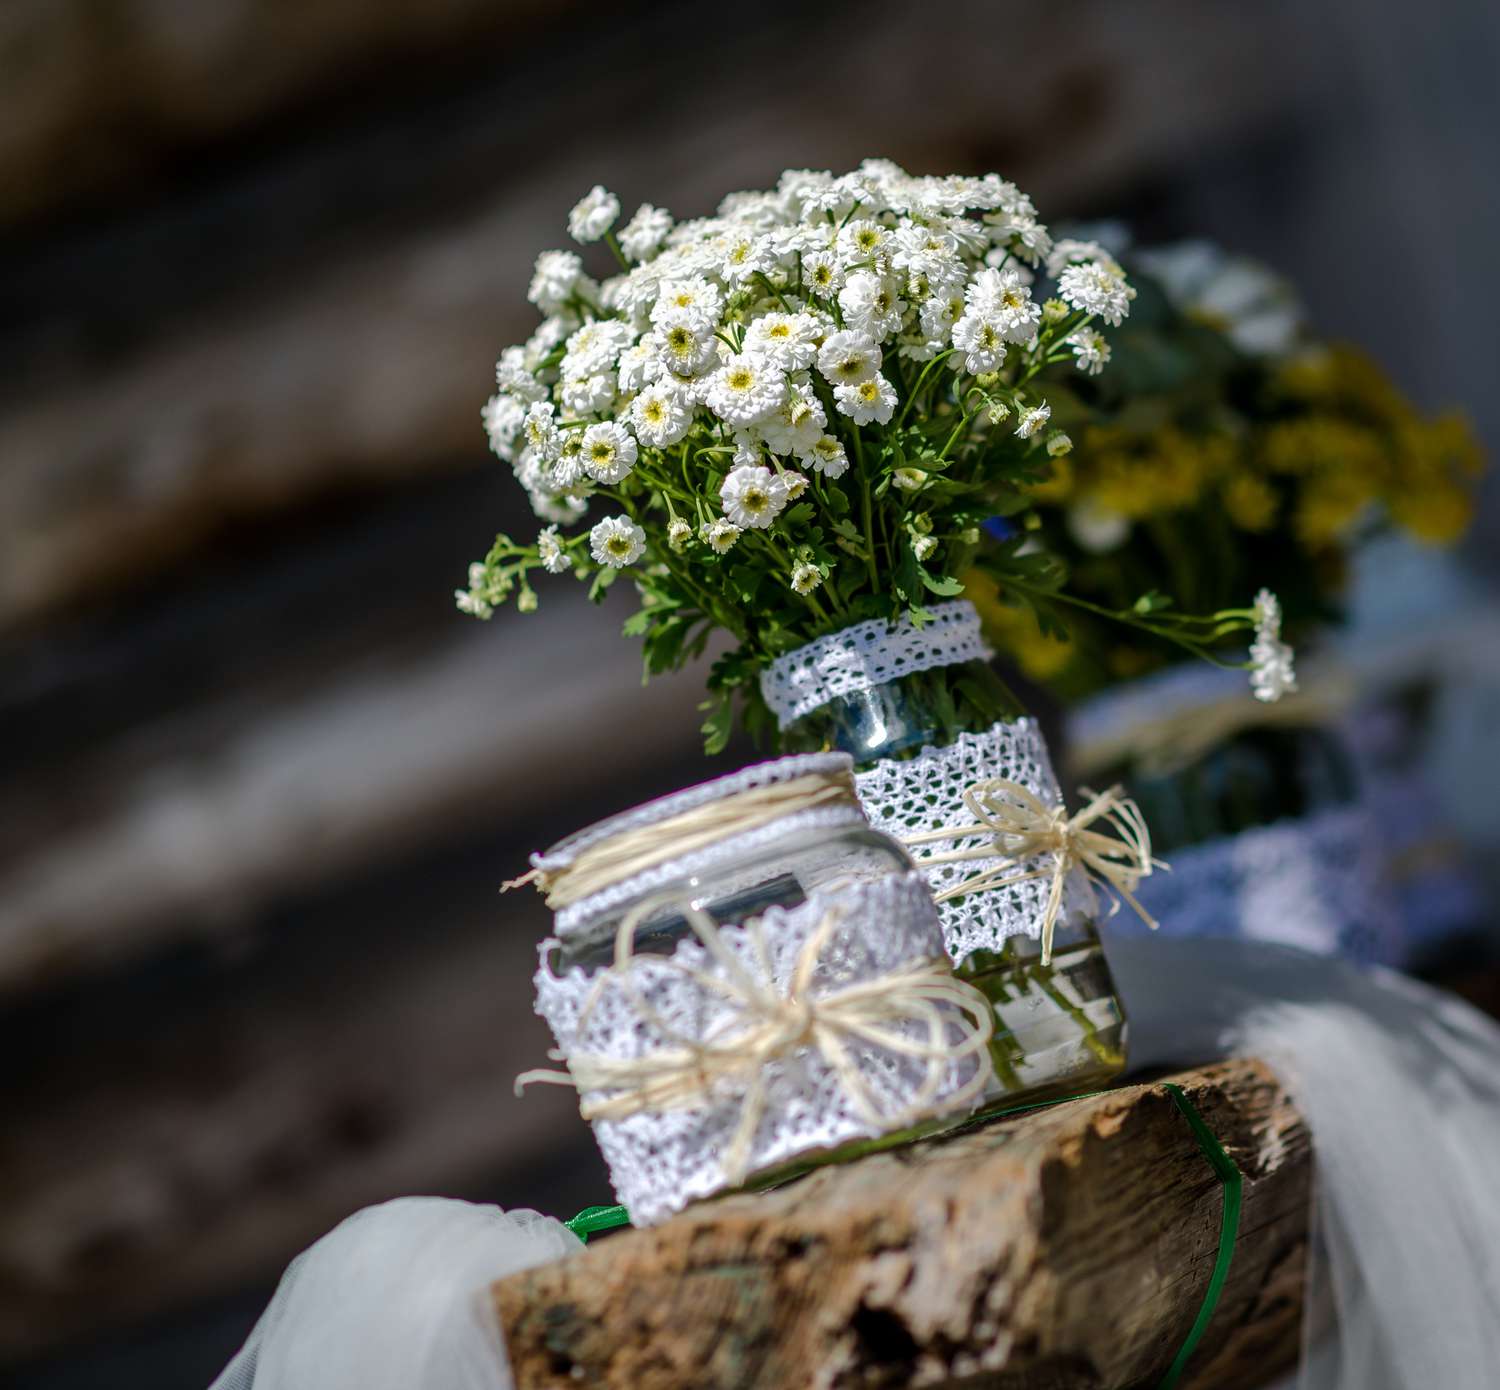 Arranjos de flores em jarras de pedreiro com renda e barbante nas jarras